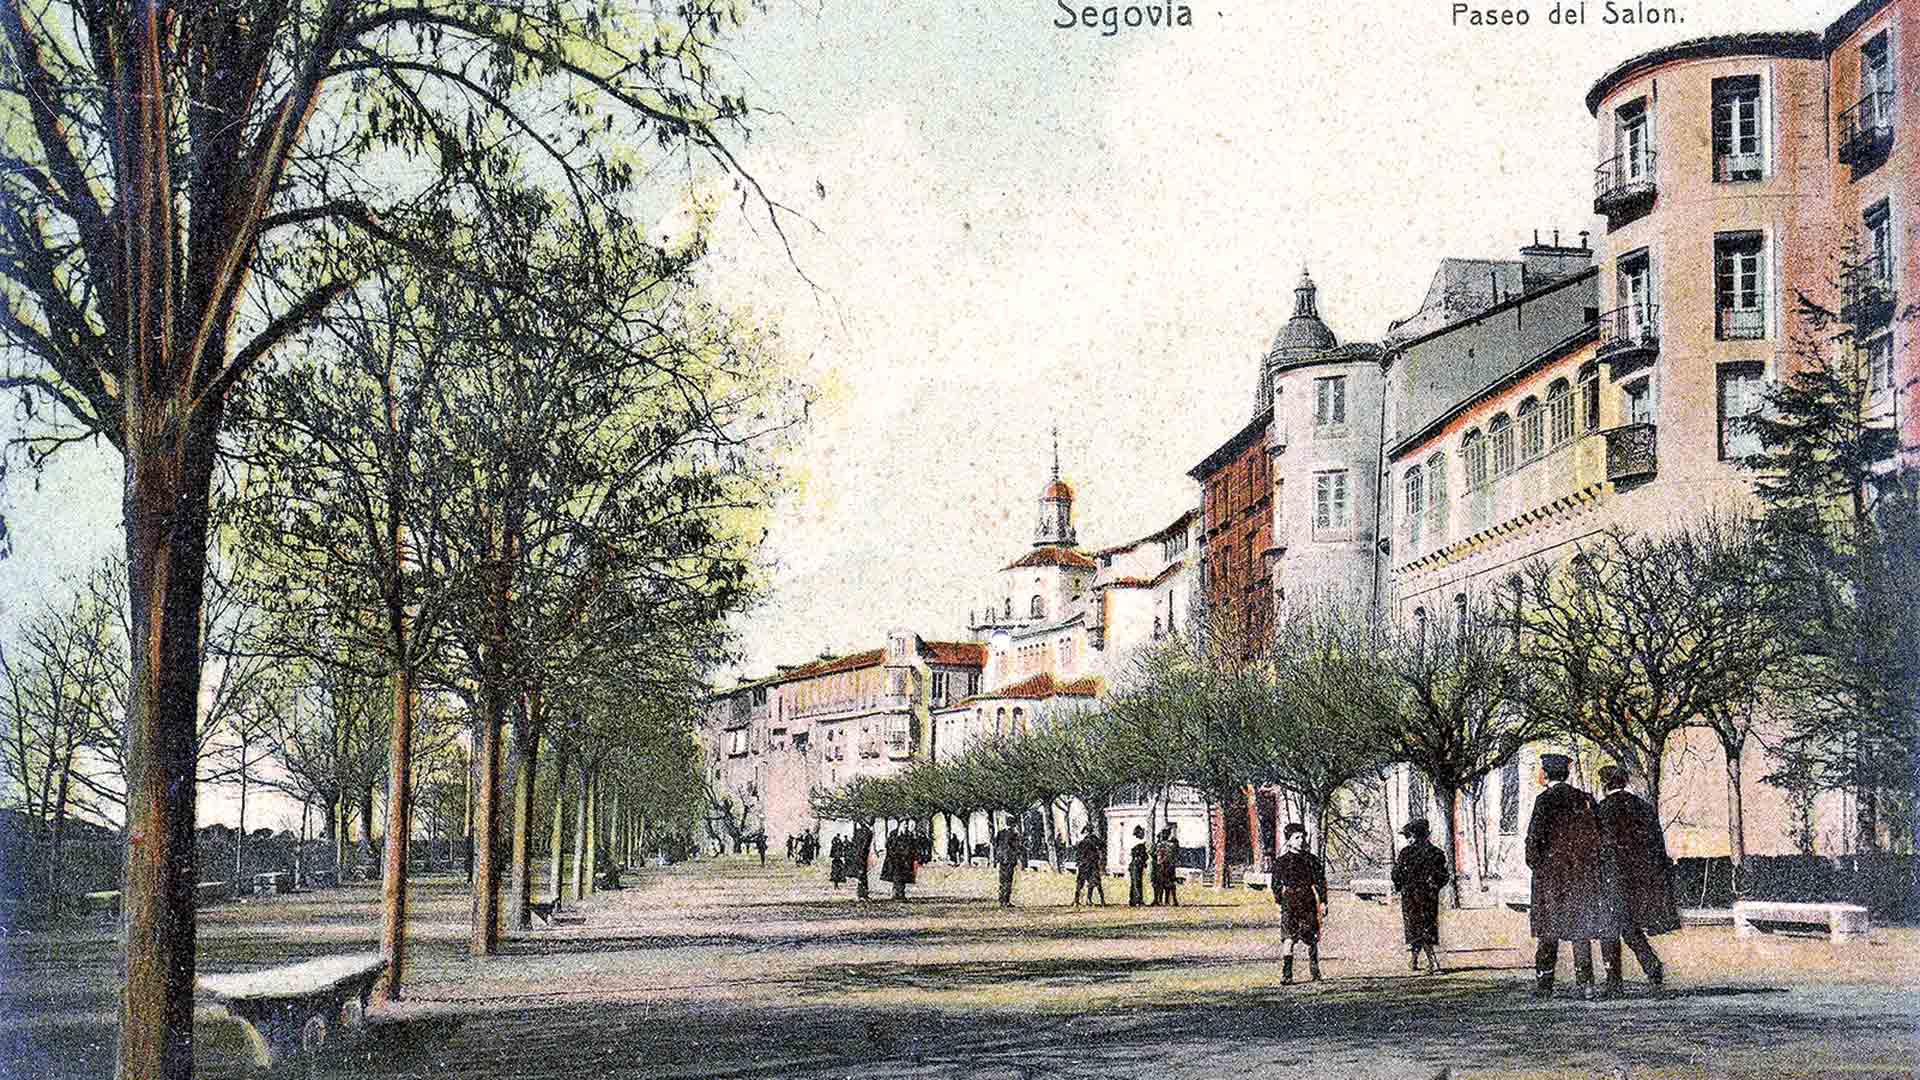 El salón a principios del S. XX. A la derecha, la alineación de acacias de sombra plantadas en 1882 (Postal. Col. Juan Pedro Velasco Sayago).